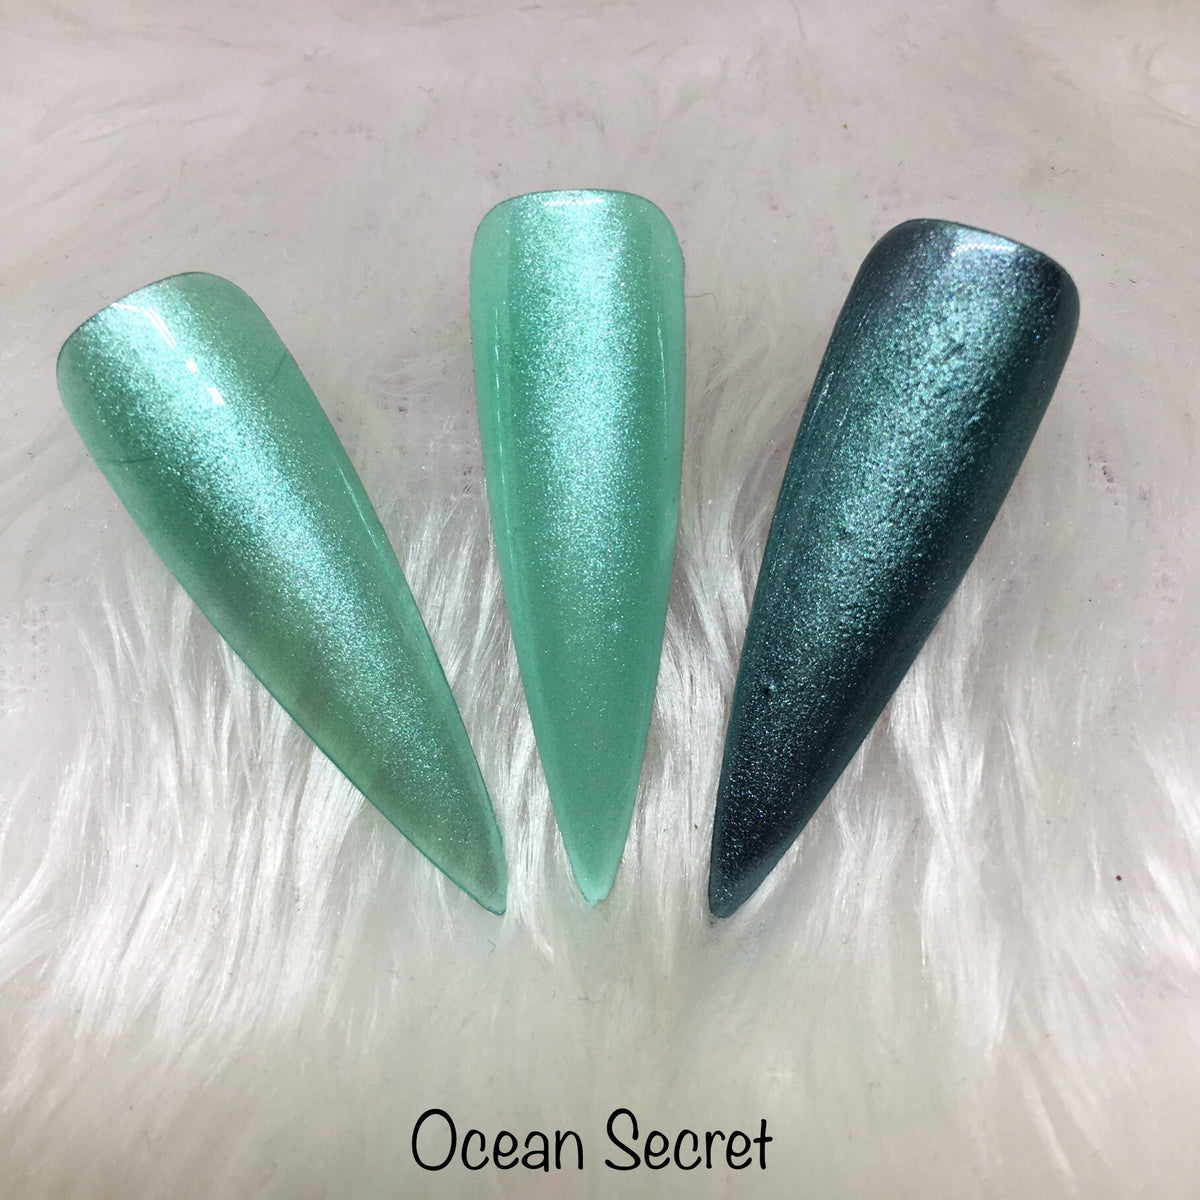 Oceans Secret-Pigments-Incandescent Shine Ltd